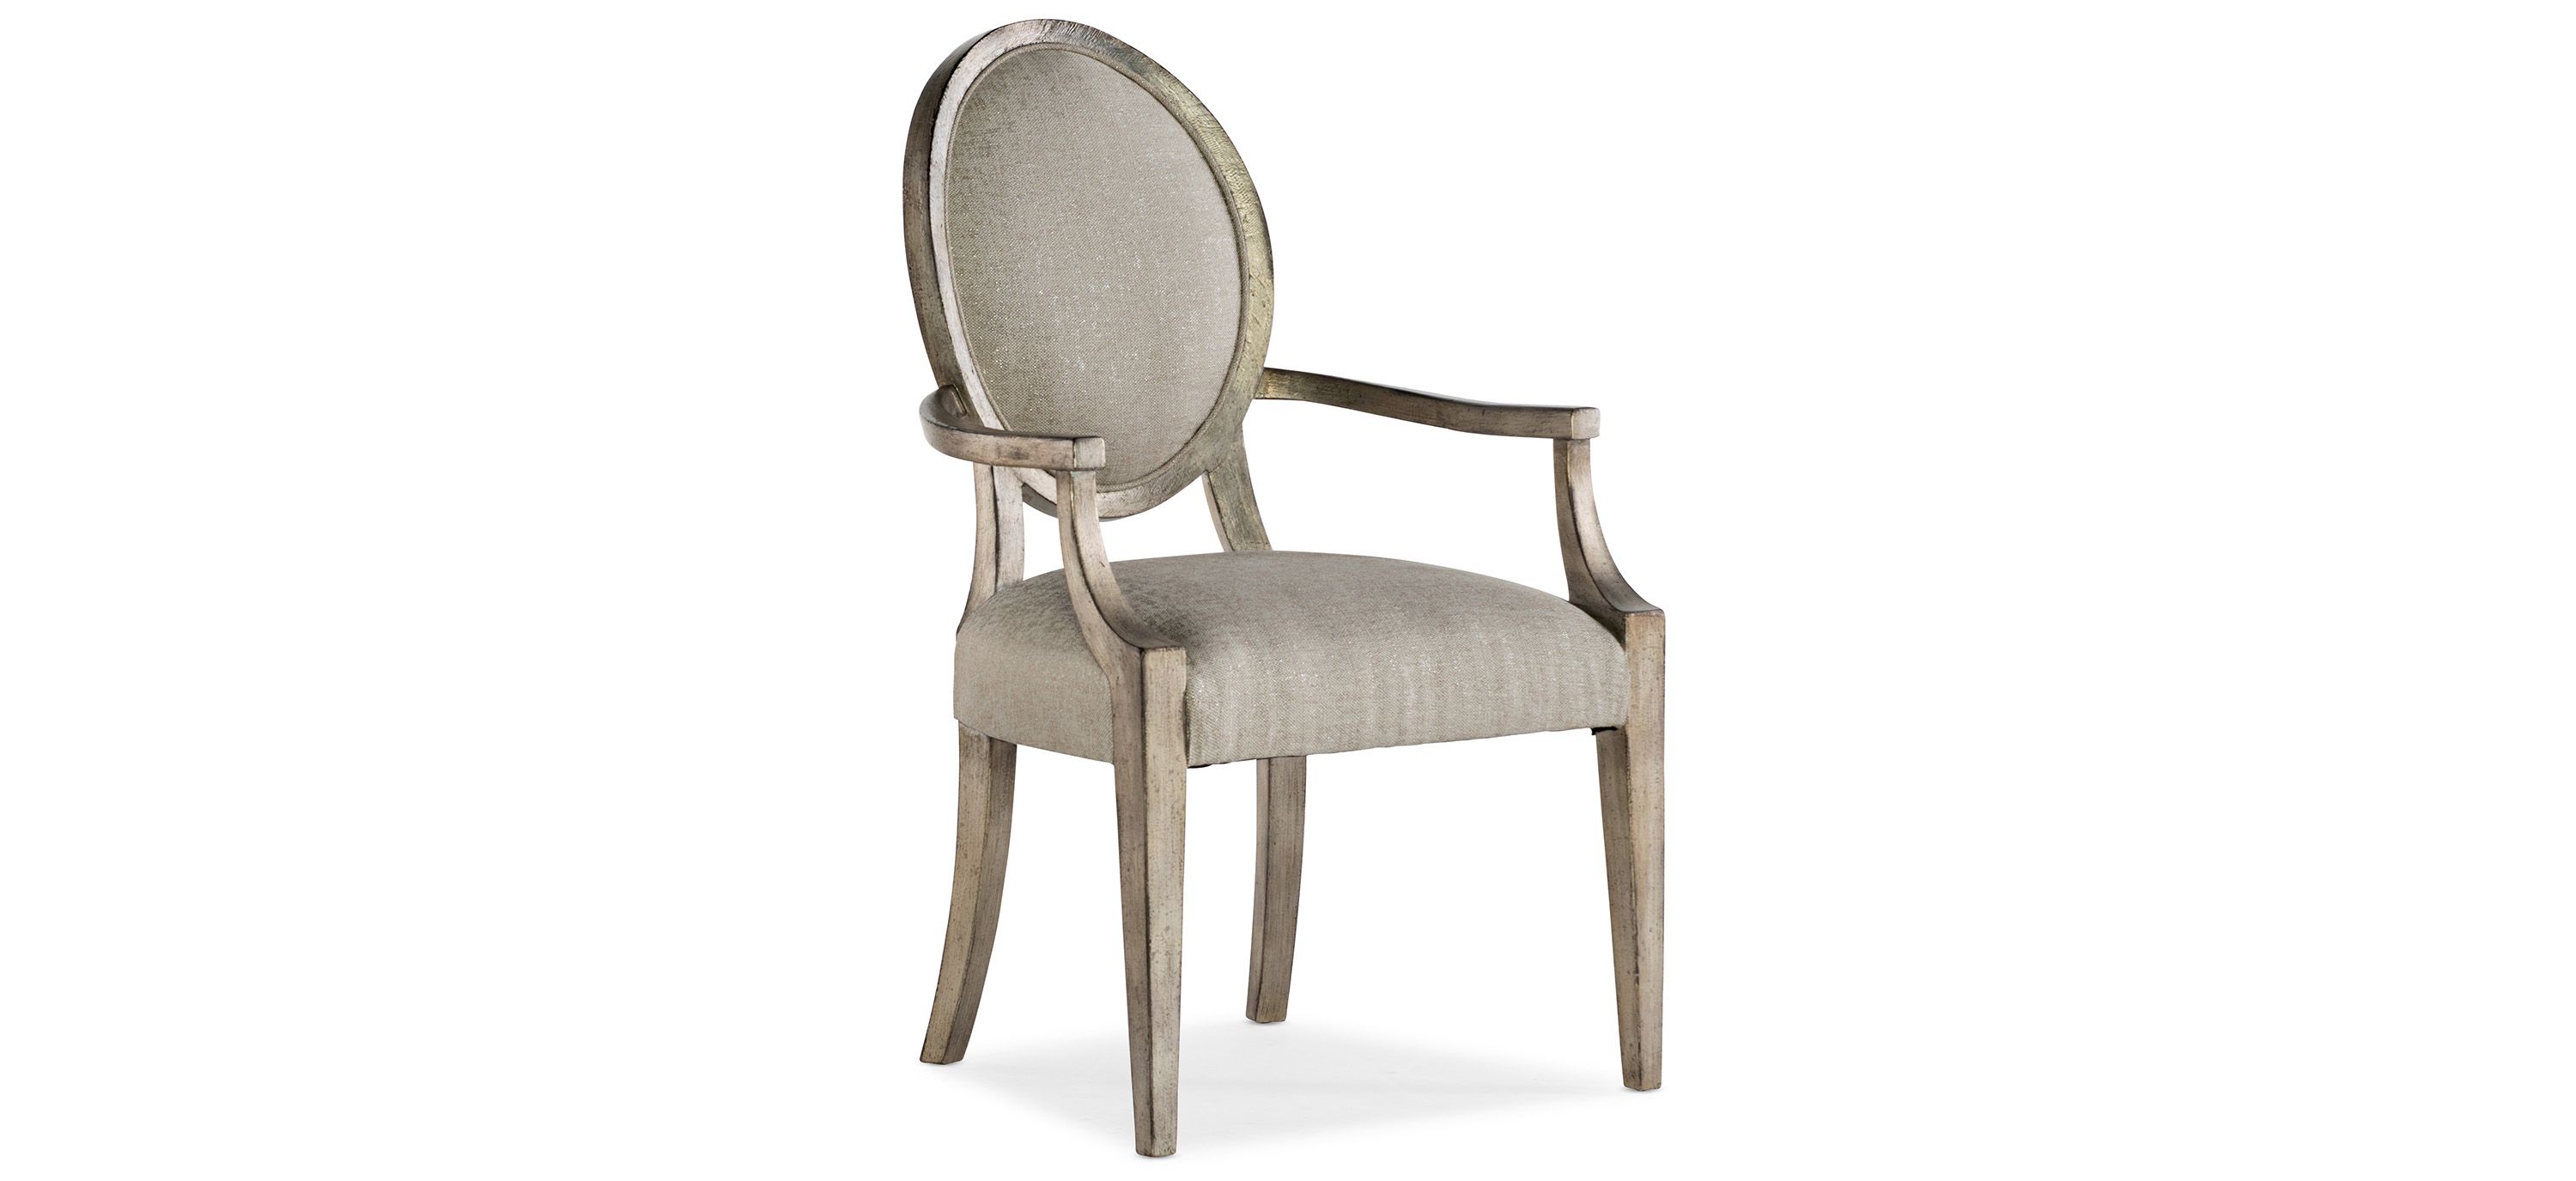 Sanctuary Romantique Oval Arm Chair - Set of 2